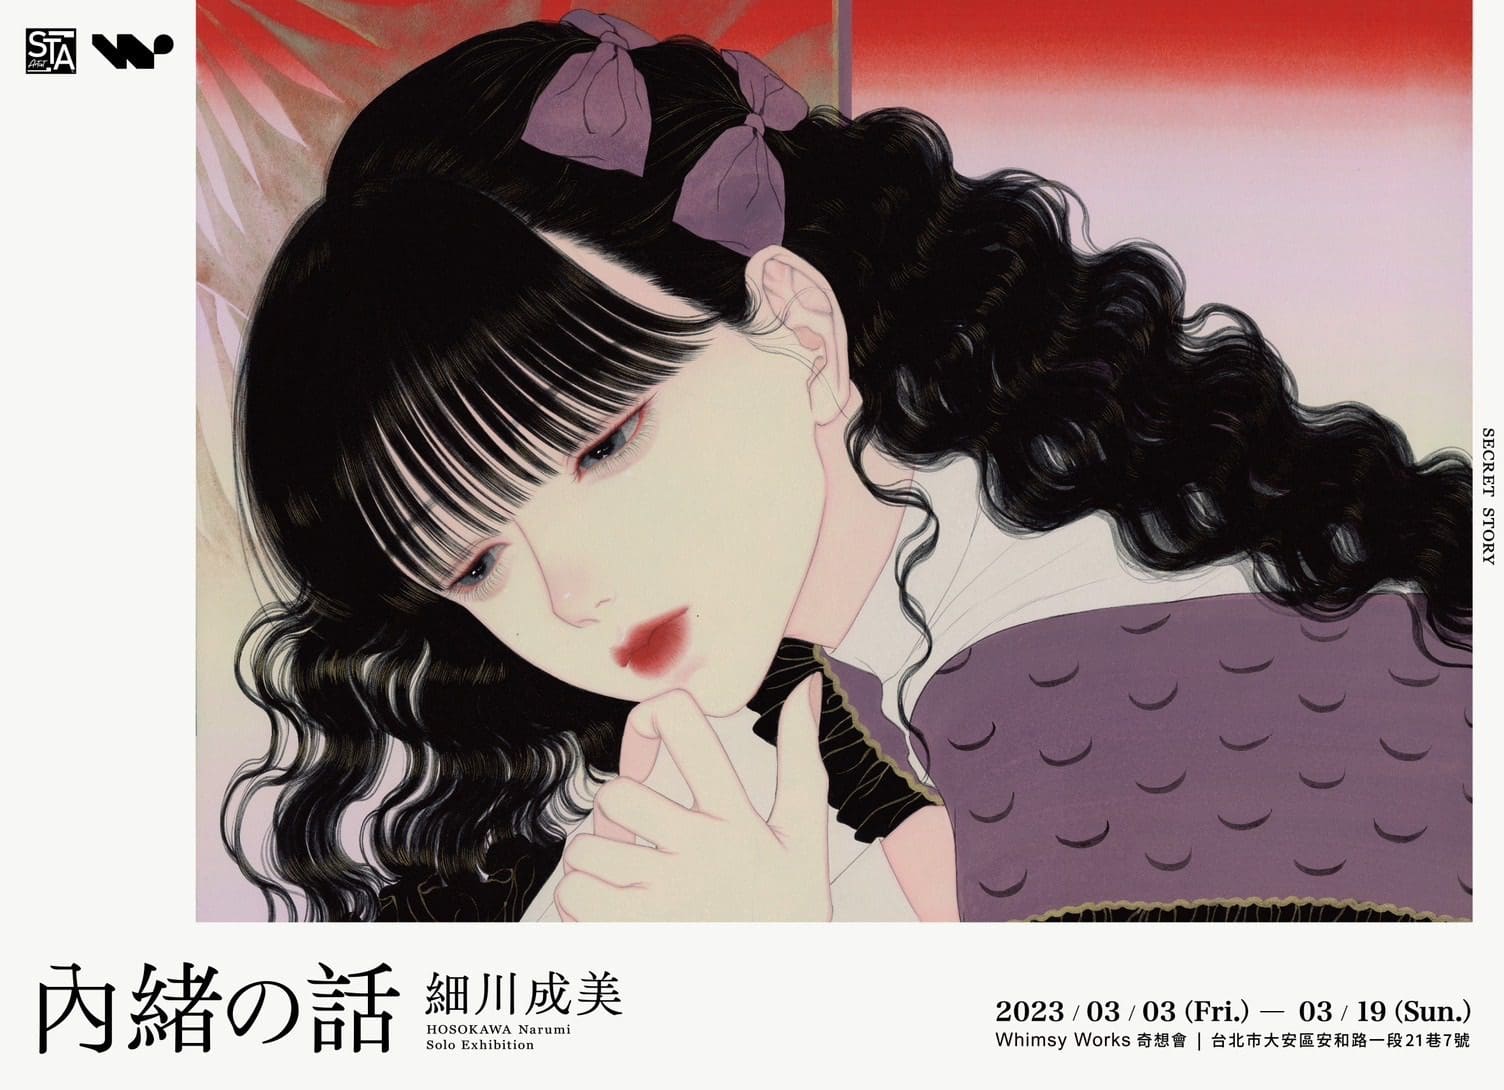 日本藝術家「細川成美」個展《內緒の話》 80年代日本漫畫風格複合歌德式異國元素